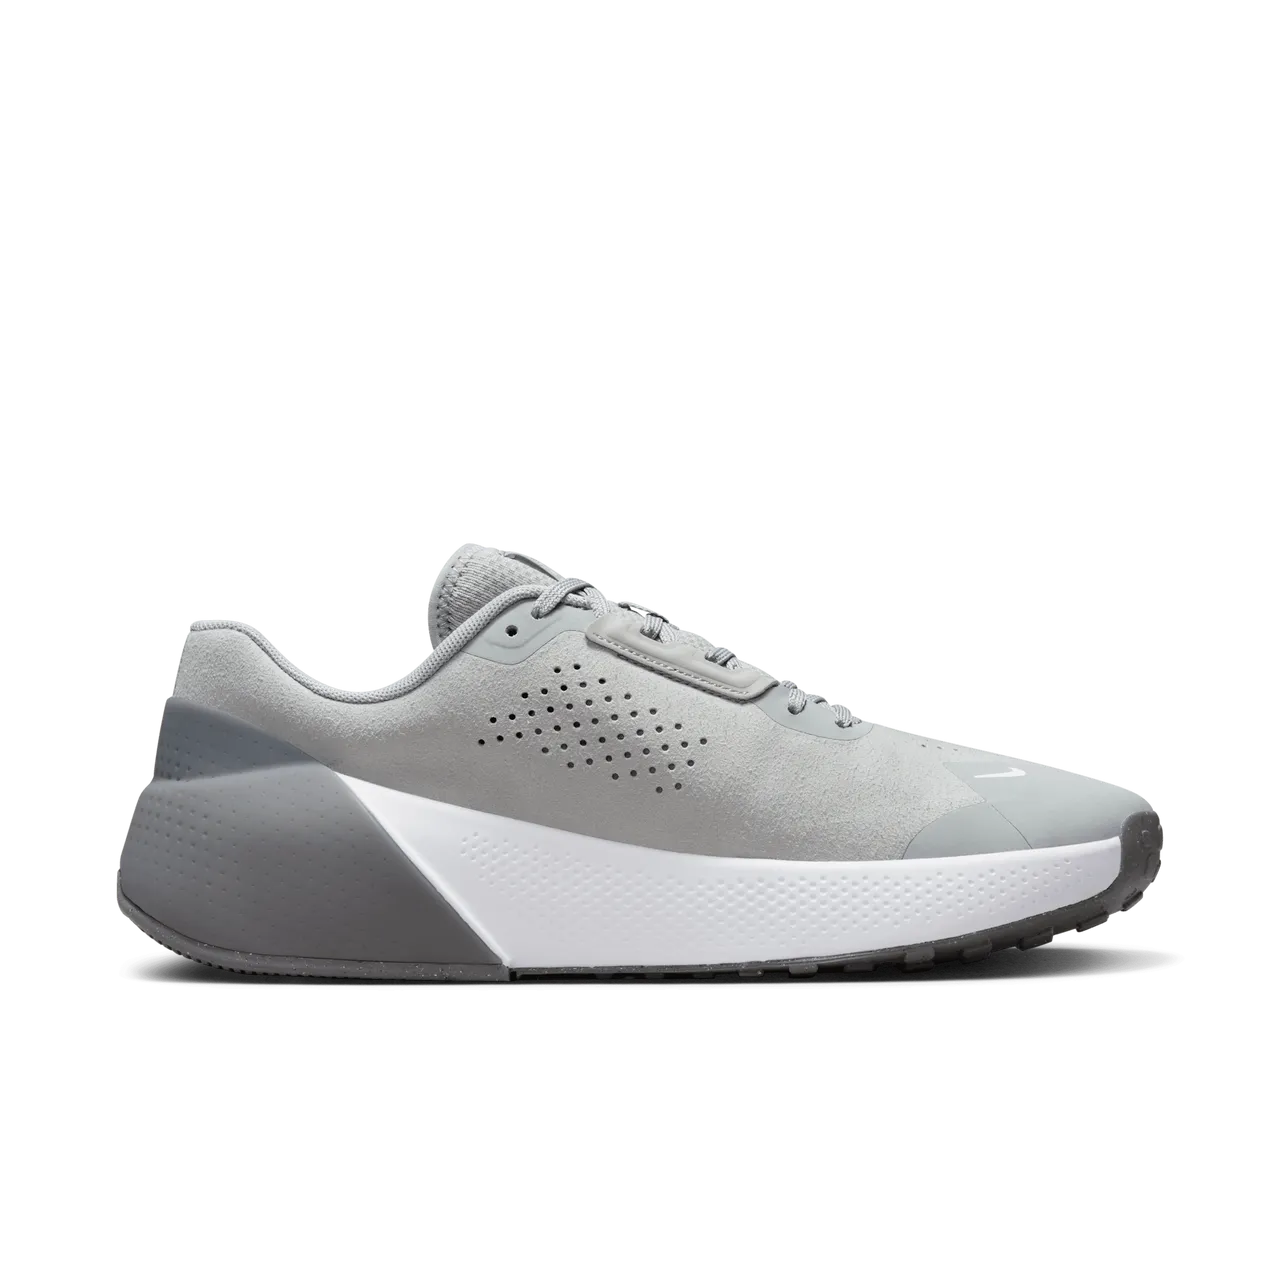 Nike Air Zoom TR 1 Workout-Schuh für Herren - Grau